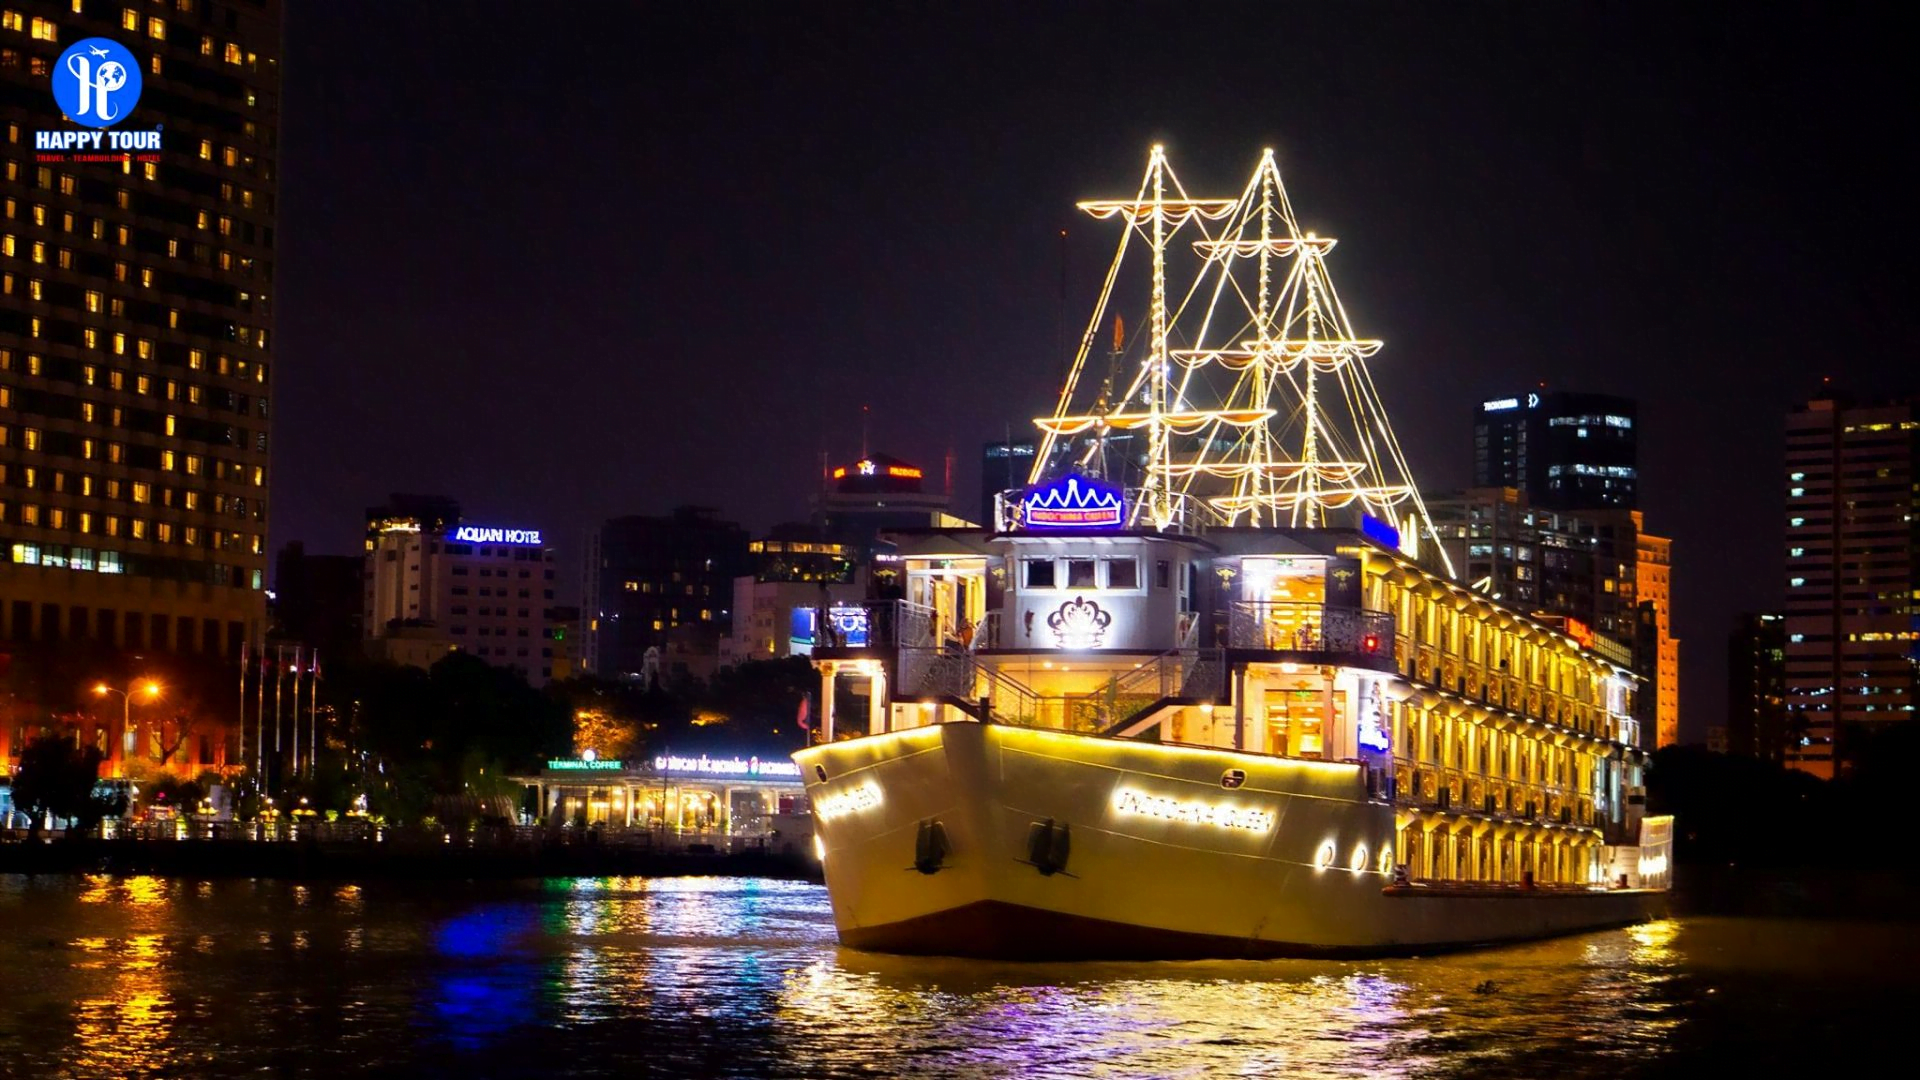 Du thuyền chạy bằng buồm trên sông Sài Gòn